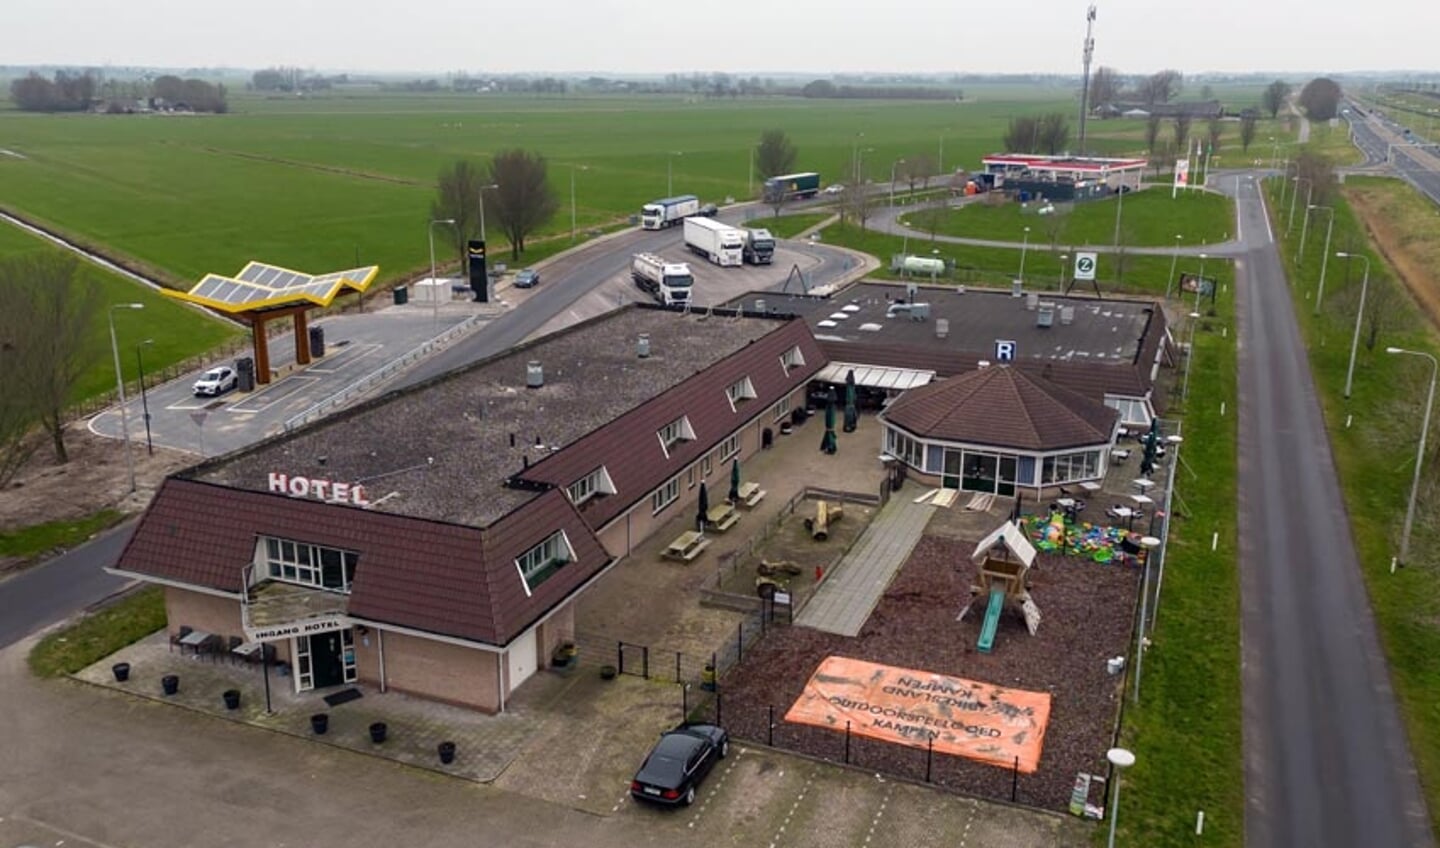 Hotel Zalkerbroek vanuit de lucht gezien